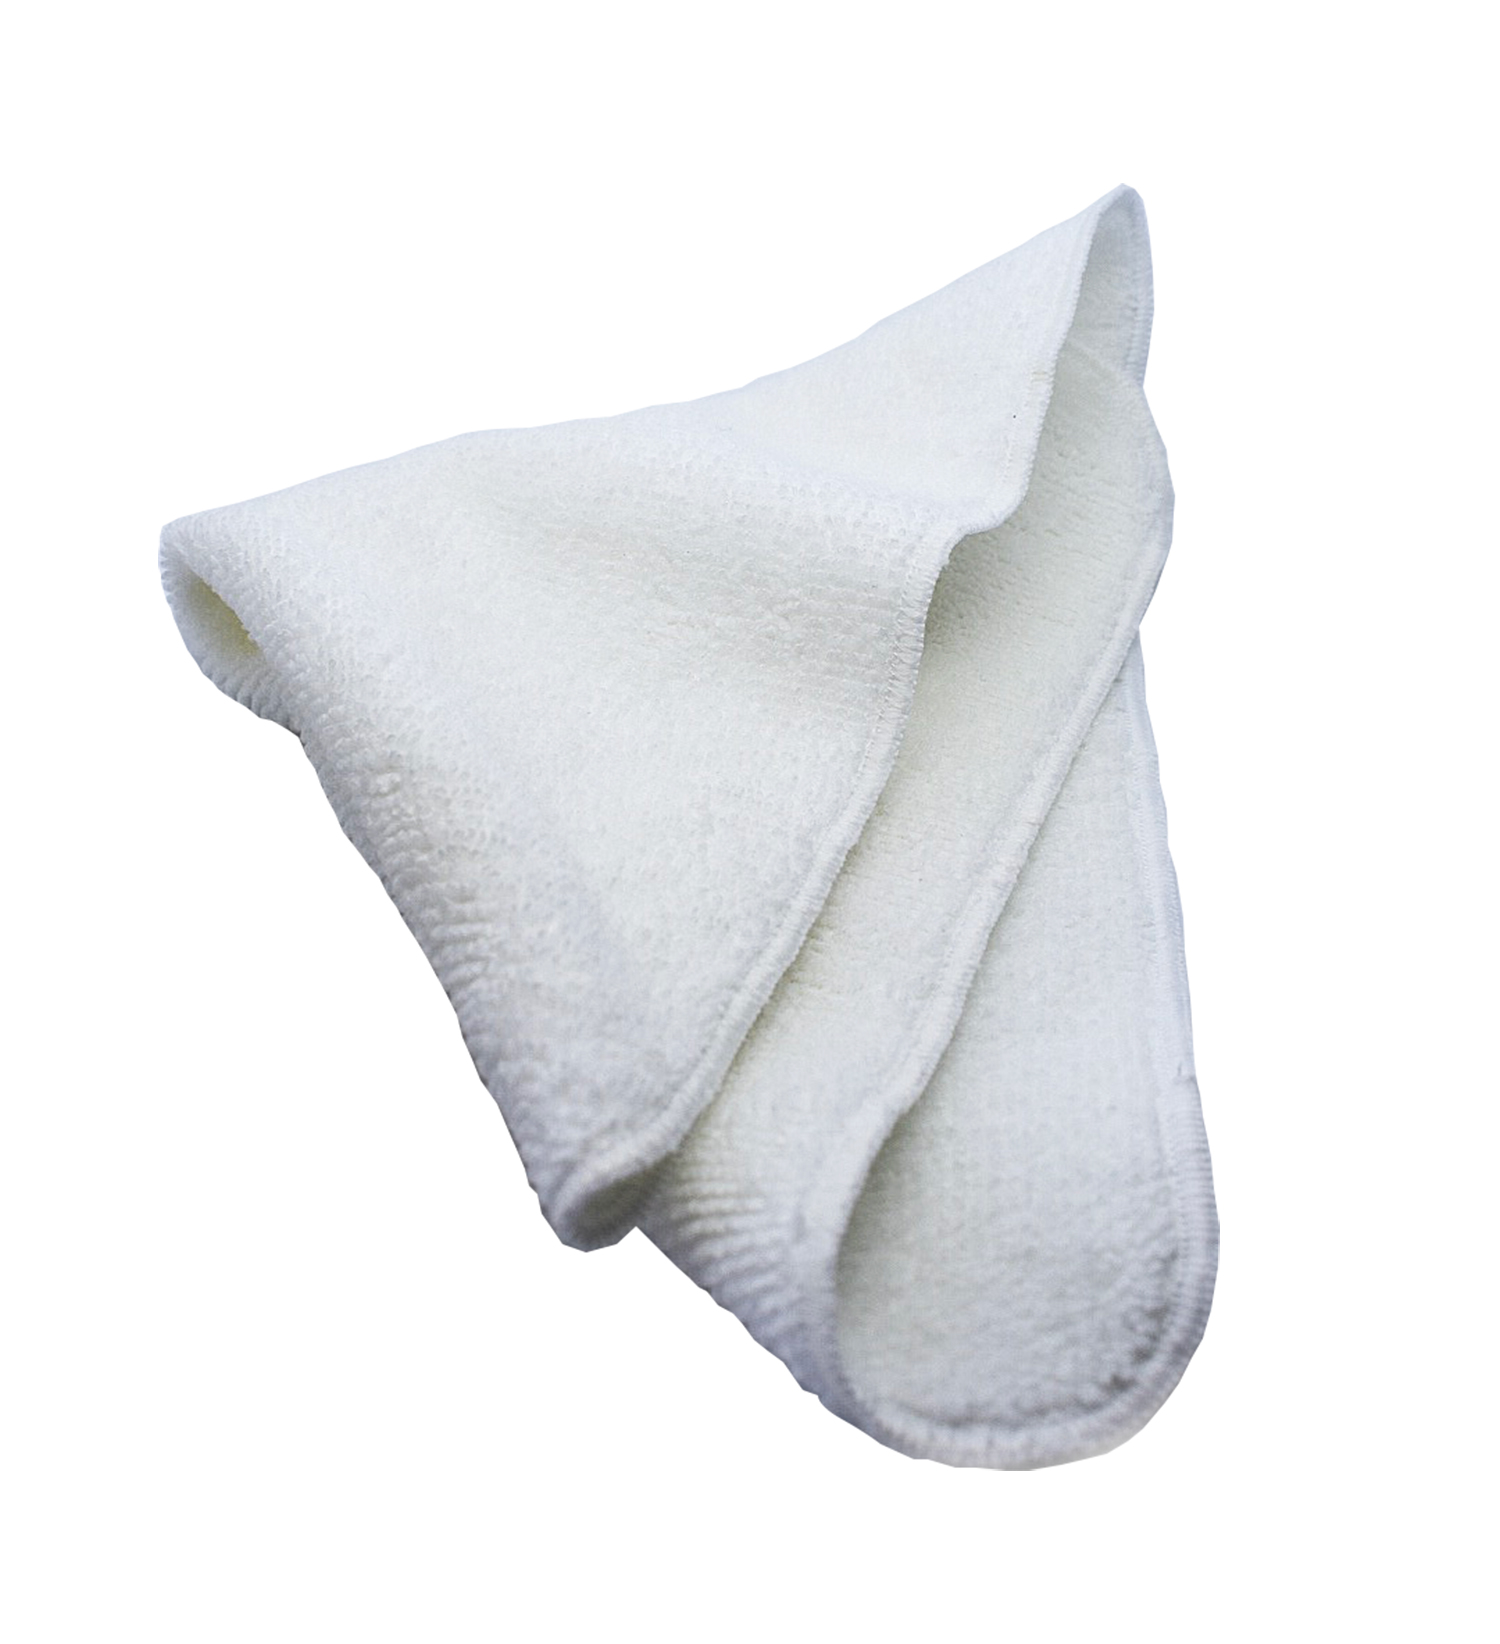 1 pieza  1PC absorbente toalla algodón adulto Toalla de microfibra toalla suave cuidado Facial Toalla de ba?o deportes Ba?o de nido de abeja hogar toalla 